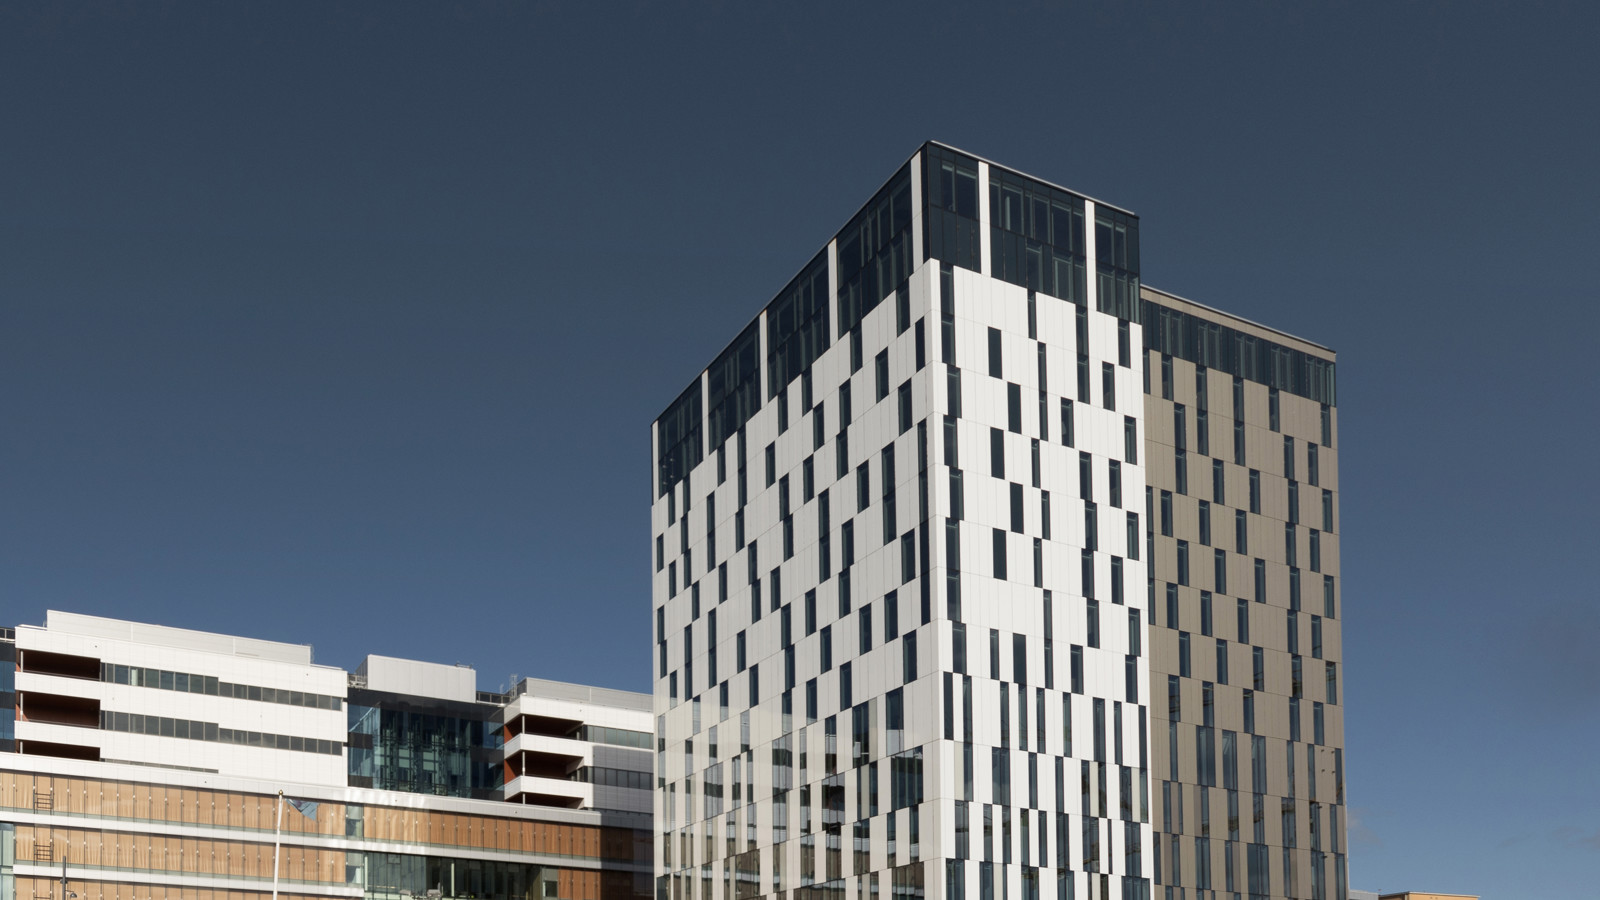 Den svartvita höga fasaden av Elite Hotel Carolina Tower i Stockholm